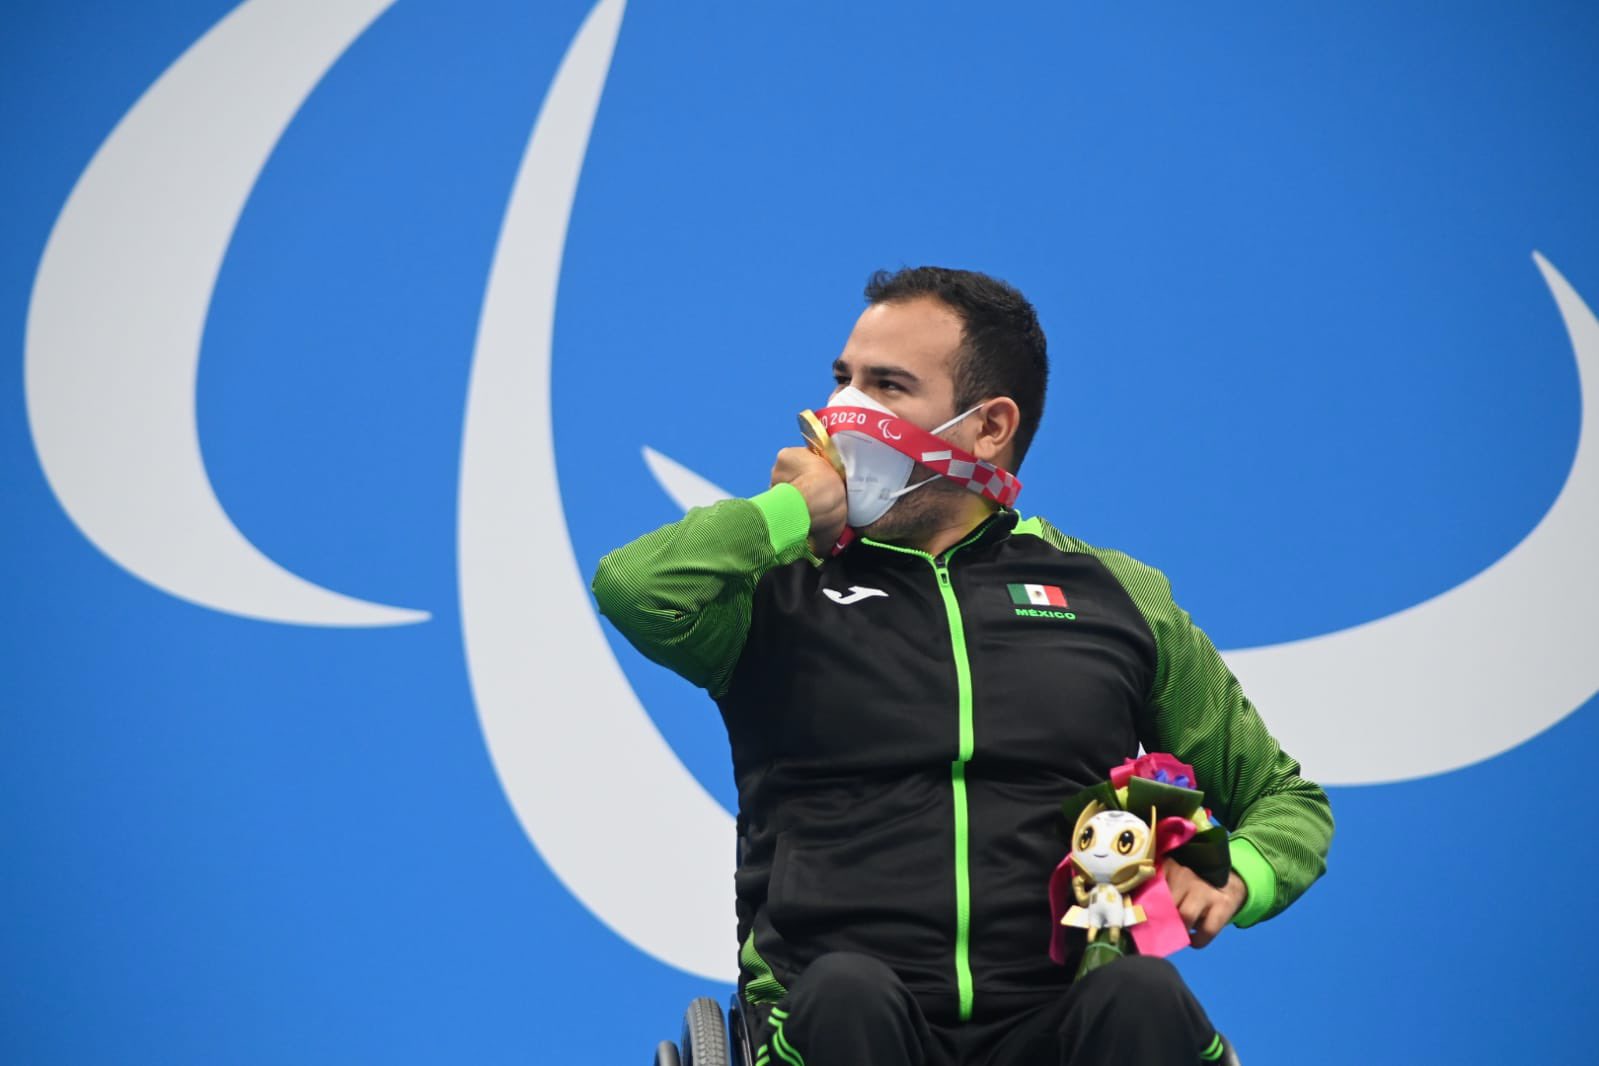 México consiguió la sexta medalla de oro de Juegos paralímpicos. Foto: Twitter